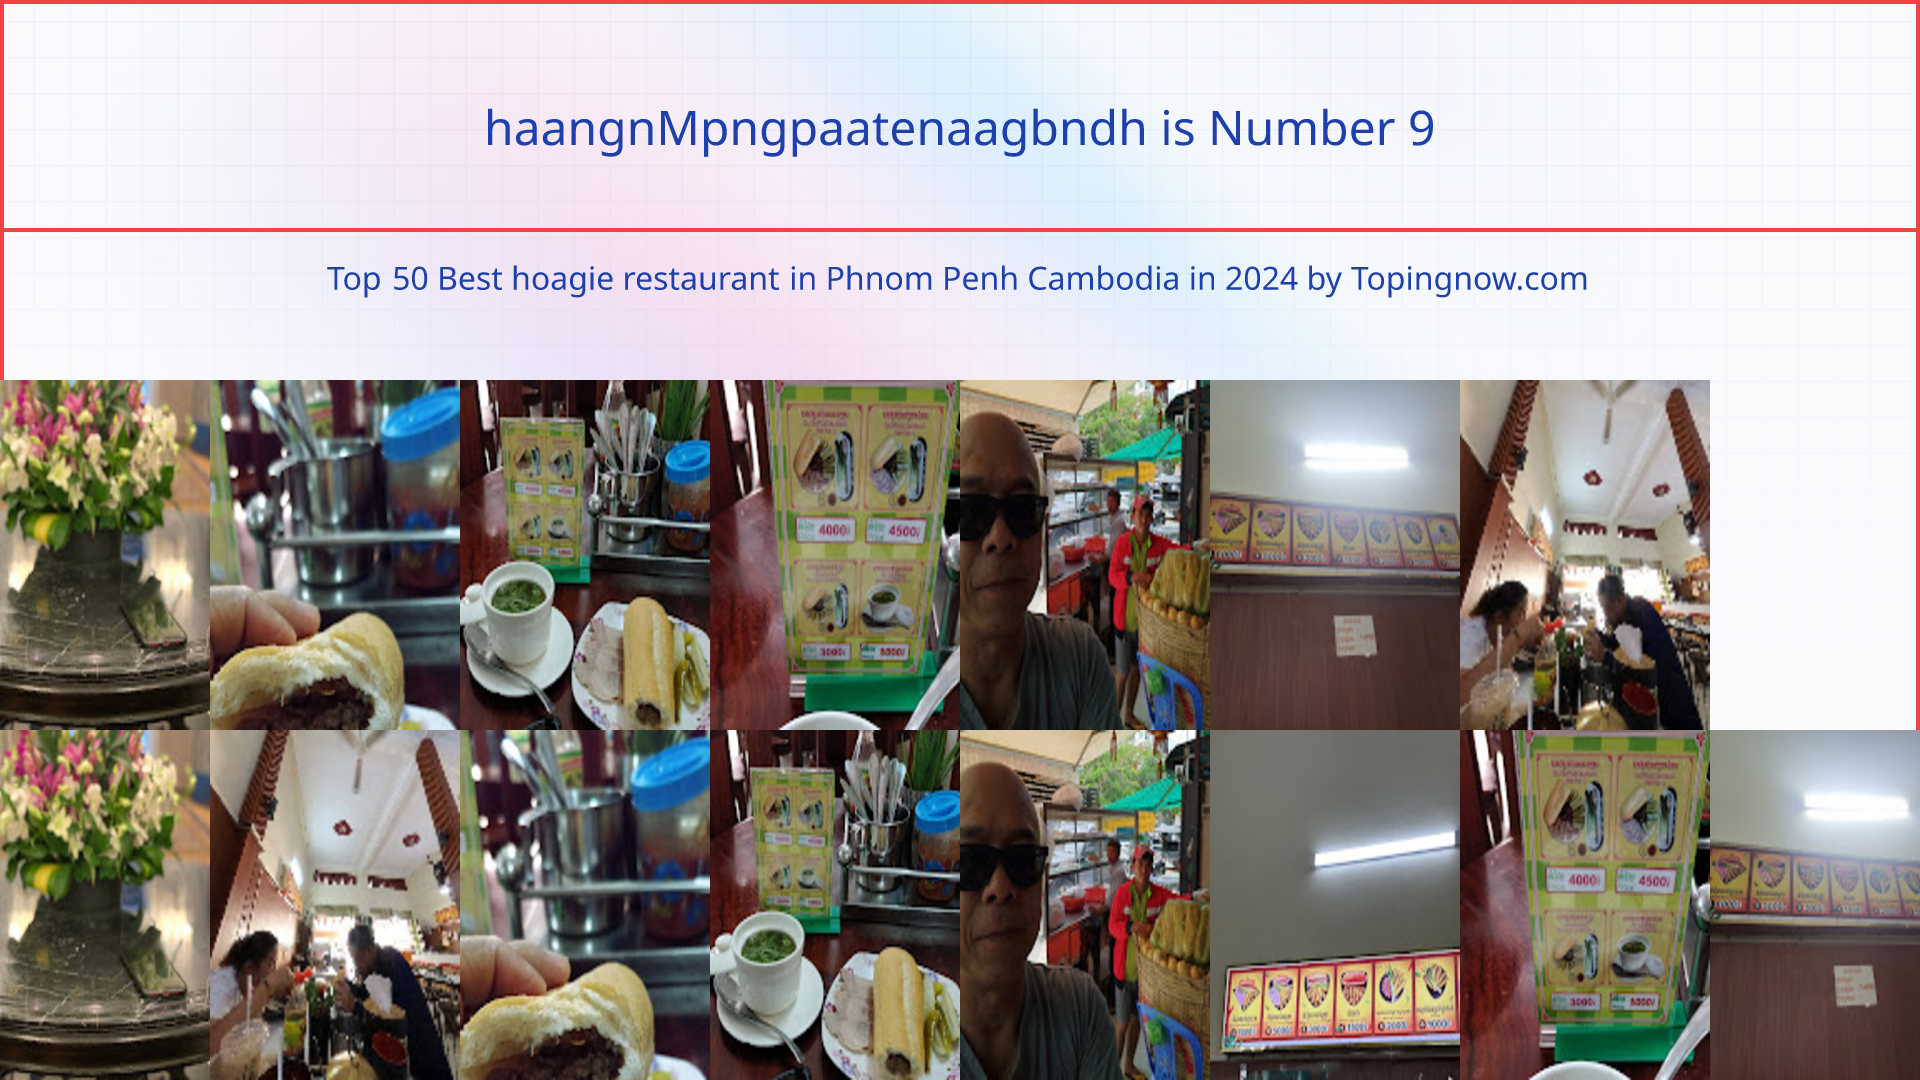 haangnMpngpaatenaagbndh: Top 50 Best hoagie restaurant in Phnom Penh Cambodia in 2024